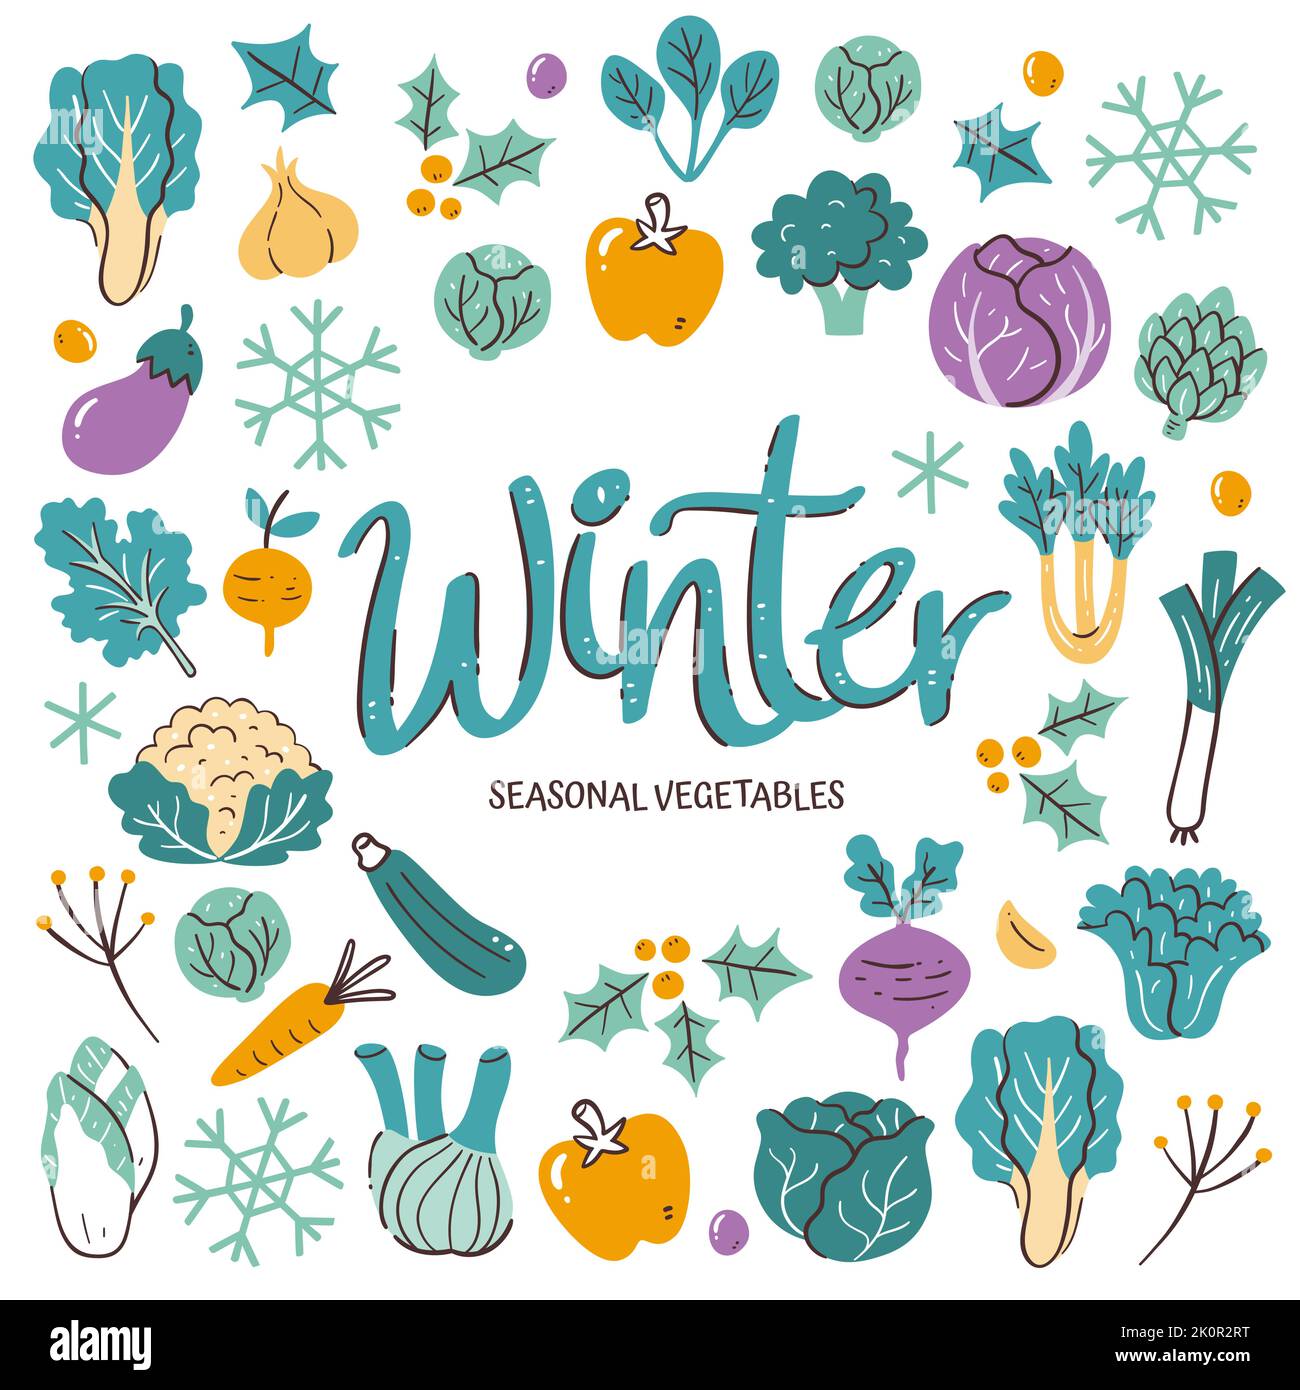 Saisonales Gemüse im Hintergrund. Wintergemüse Komposition aus bunten handgezeichneten Vektor-Icons, isoliert auf weißem Hintergrund. Stock Vektor